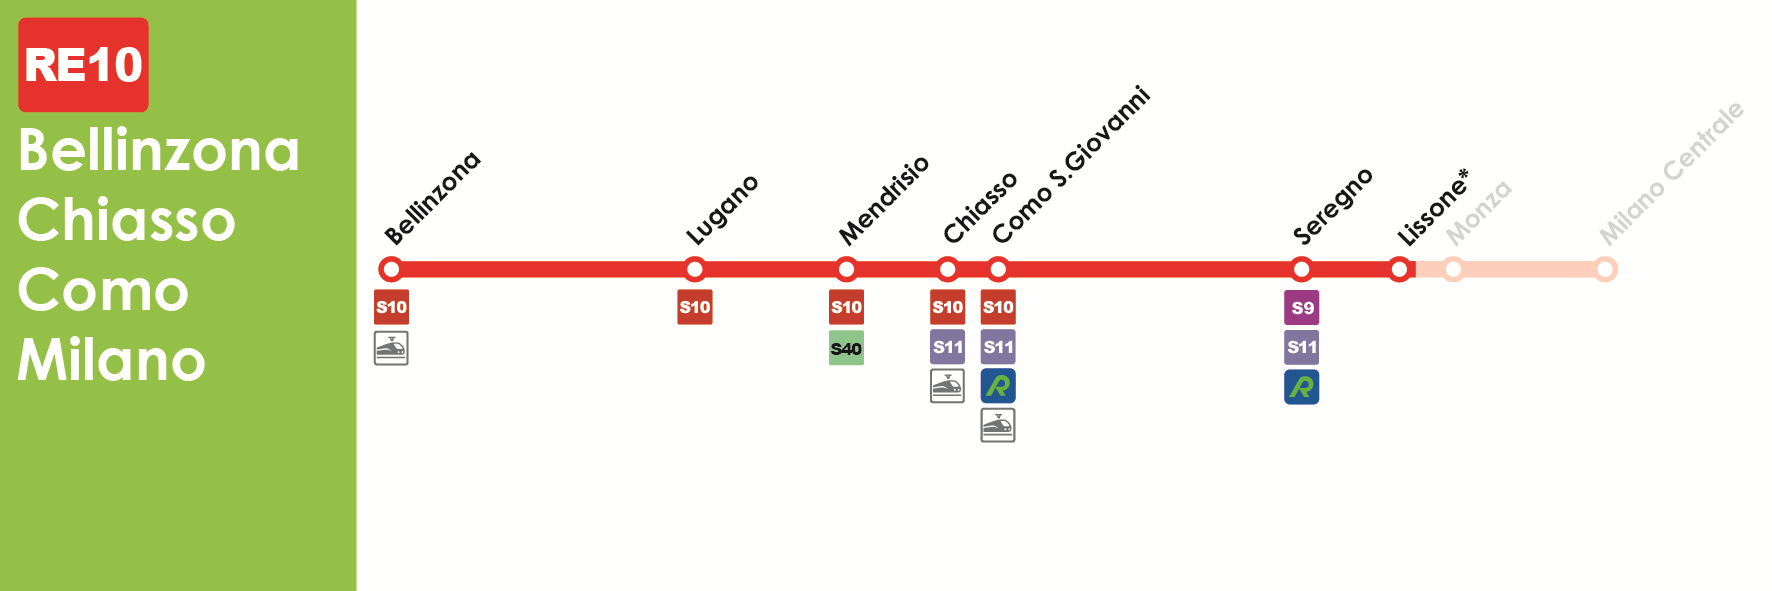 RE10 (Nord) Bellinzona-Chiasso-Como-Lissone Stazione ferroviaria in prossimità del Parco di Monza Lissone (da qui proseguire a piedi, seguendo il percorso segnalato) Percorso per Treni della linea RE